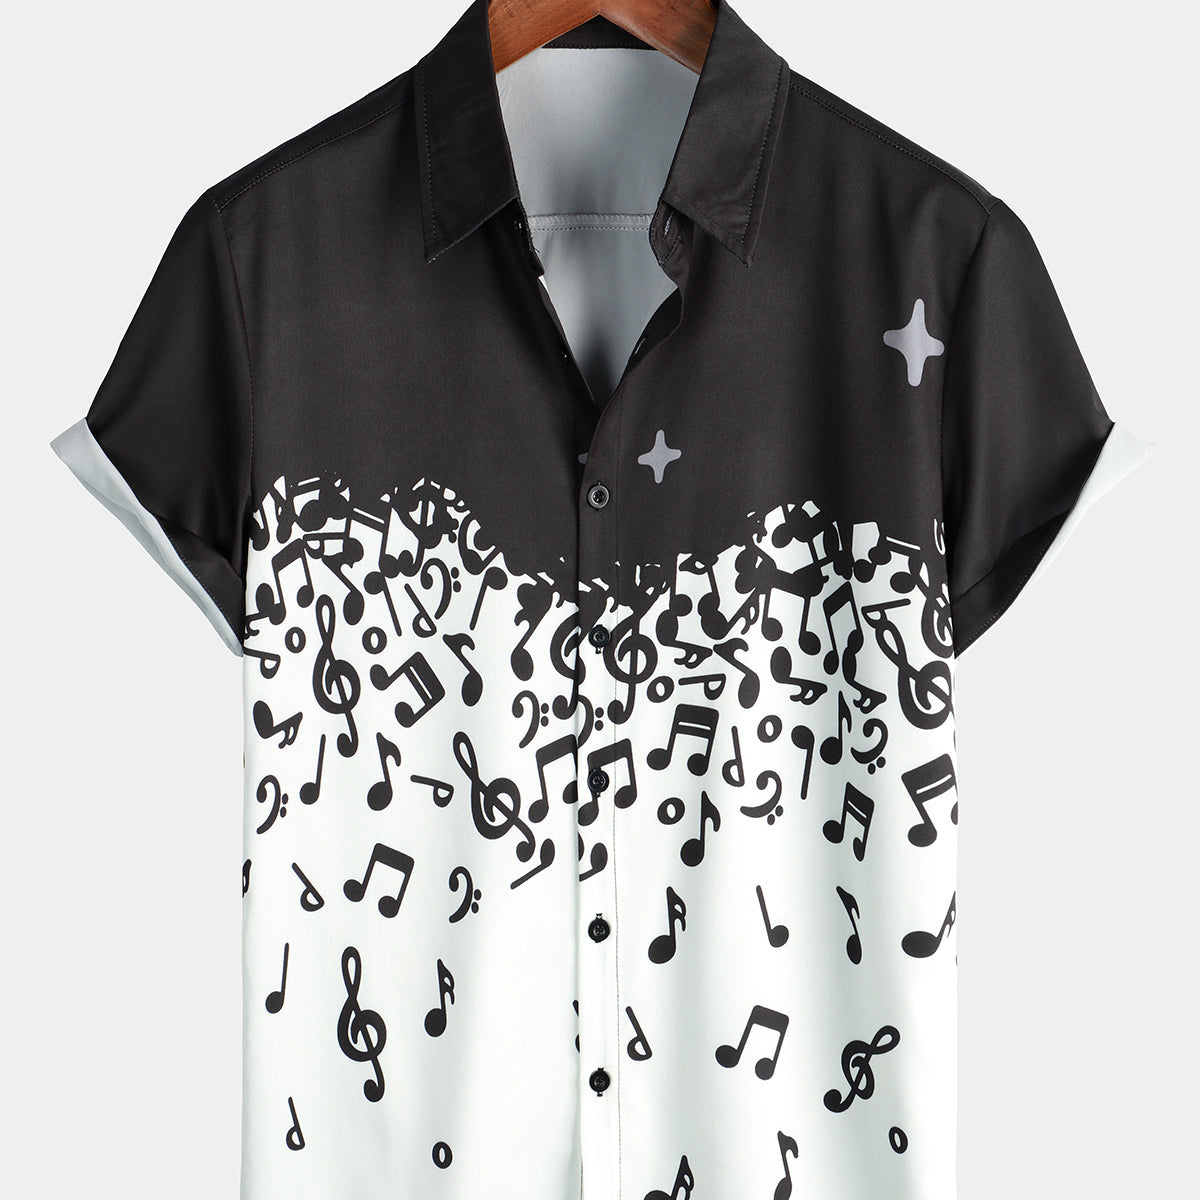 Men's Musical Note Rock & Roll Print Musicians Casual Short Sleeve Shirt